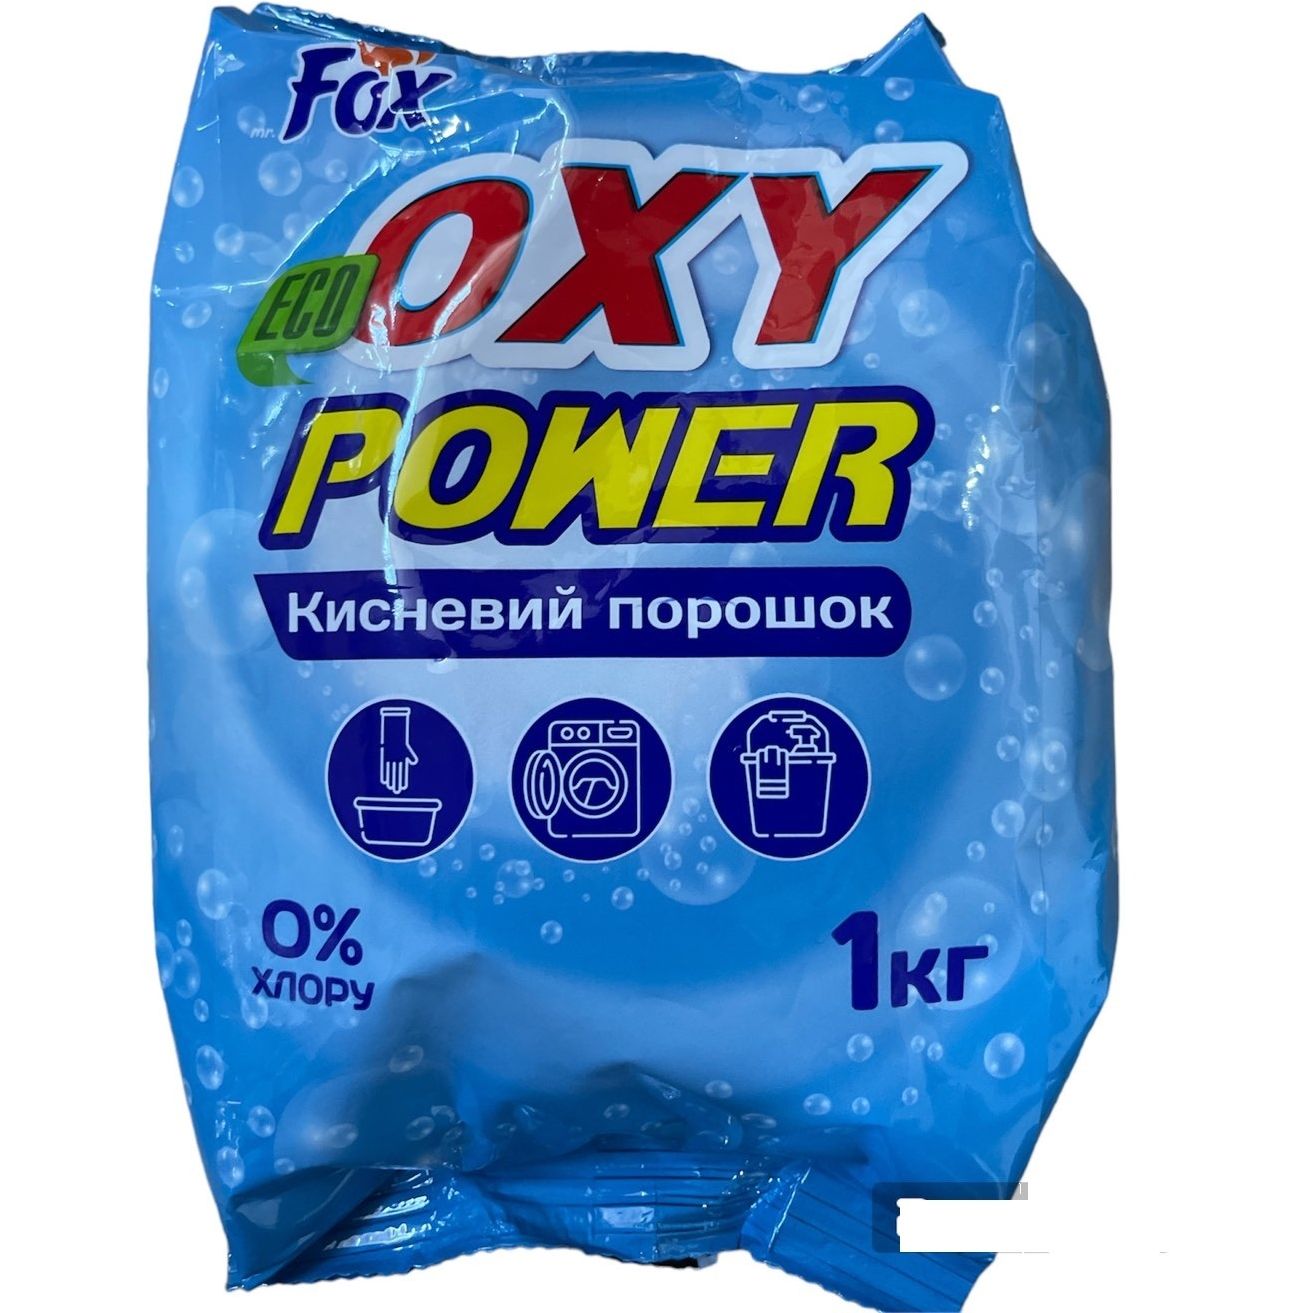 Кислородный стиральный порошок Fox Oxy Power без хлора 1 кг - фото 1